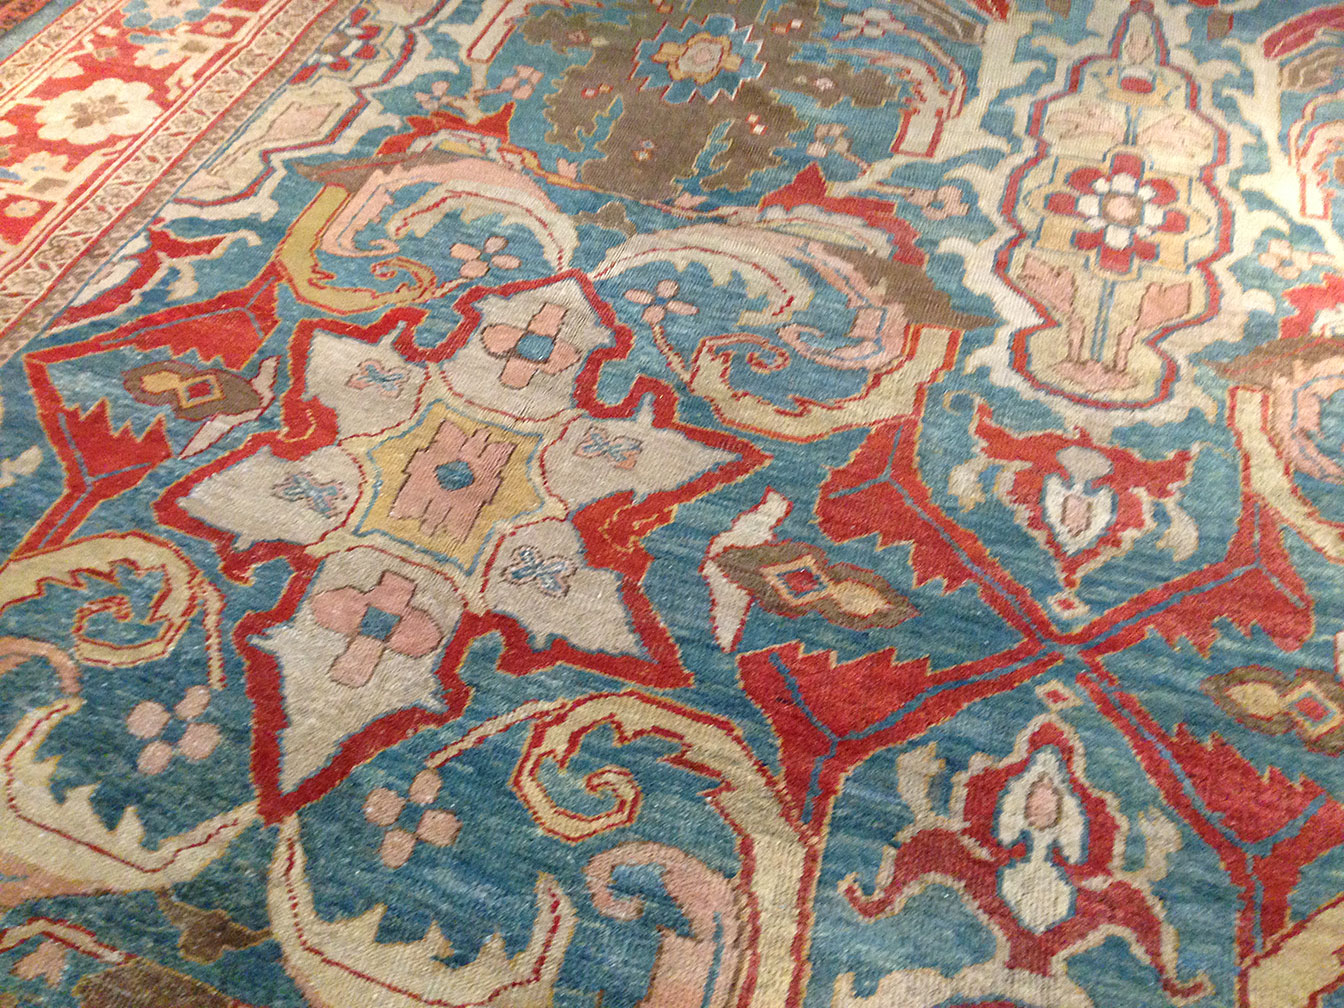 Antique sultan abad Carpet - # 50162